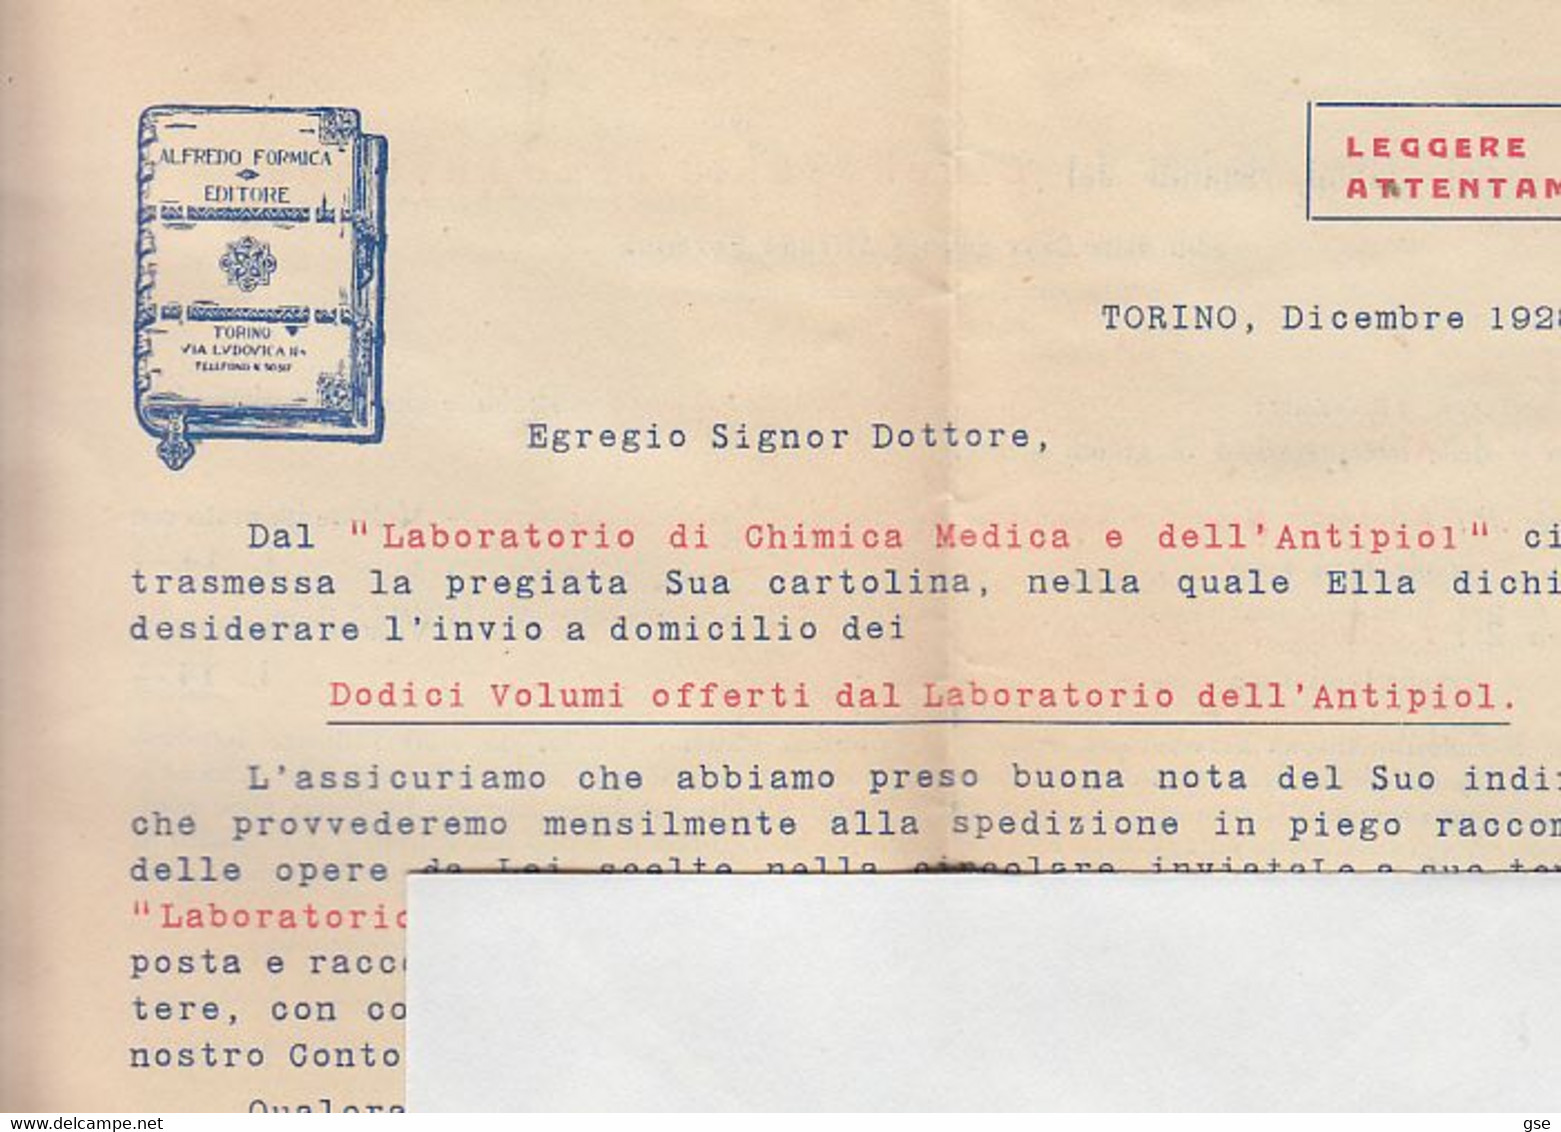 ITALIA 1929 - Casa Editrice "ALFREDO FORMICA - Torino"" - Lettera Per Aquila-.- - Società, Politica, Economia